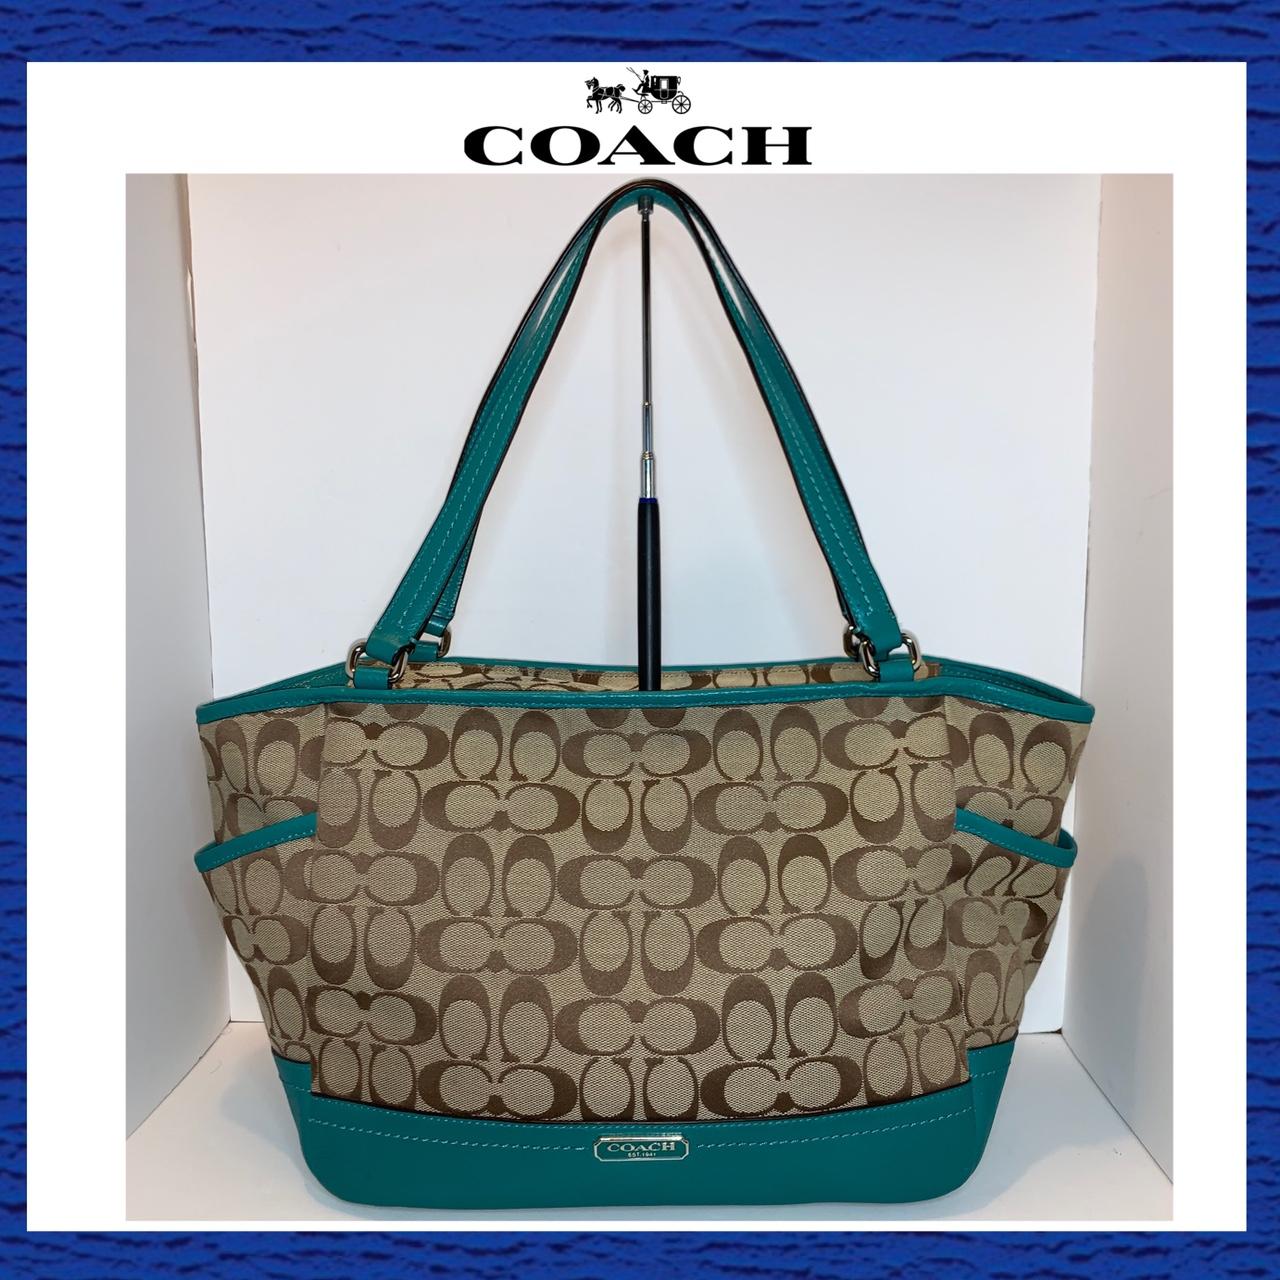 Coach Women's bags